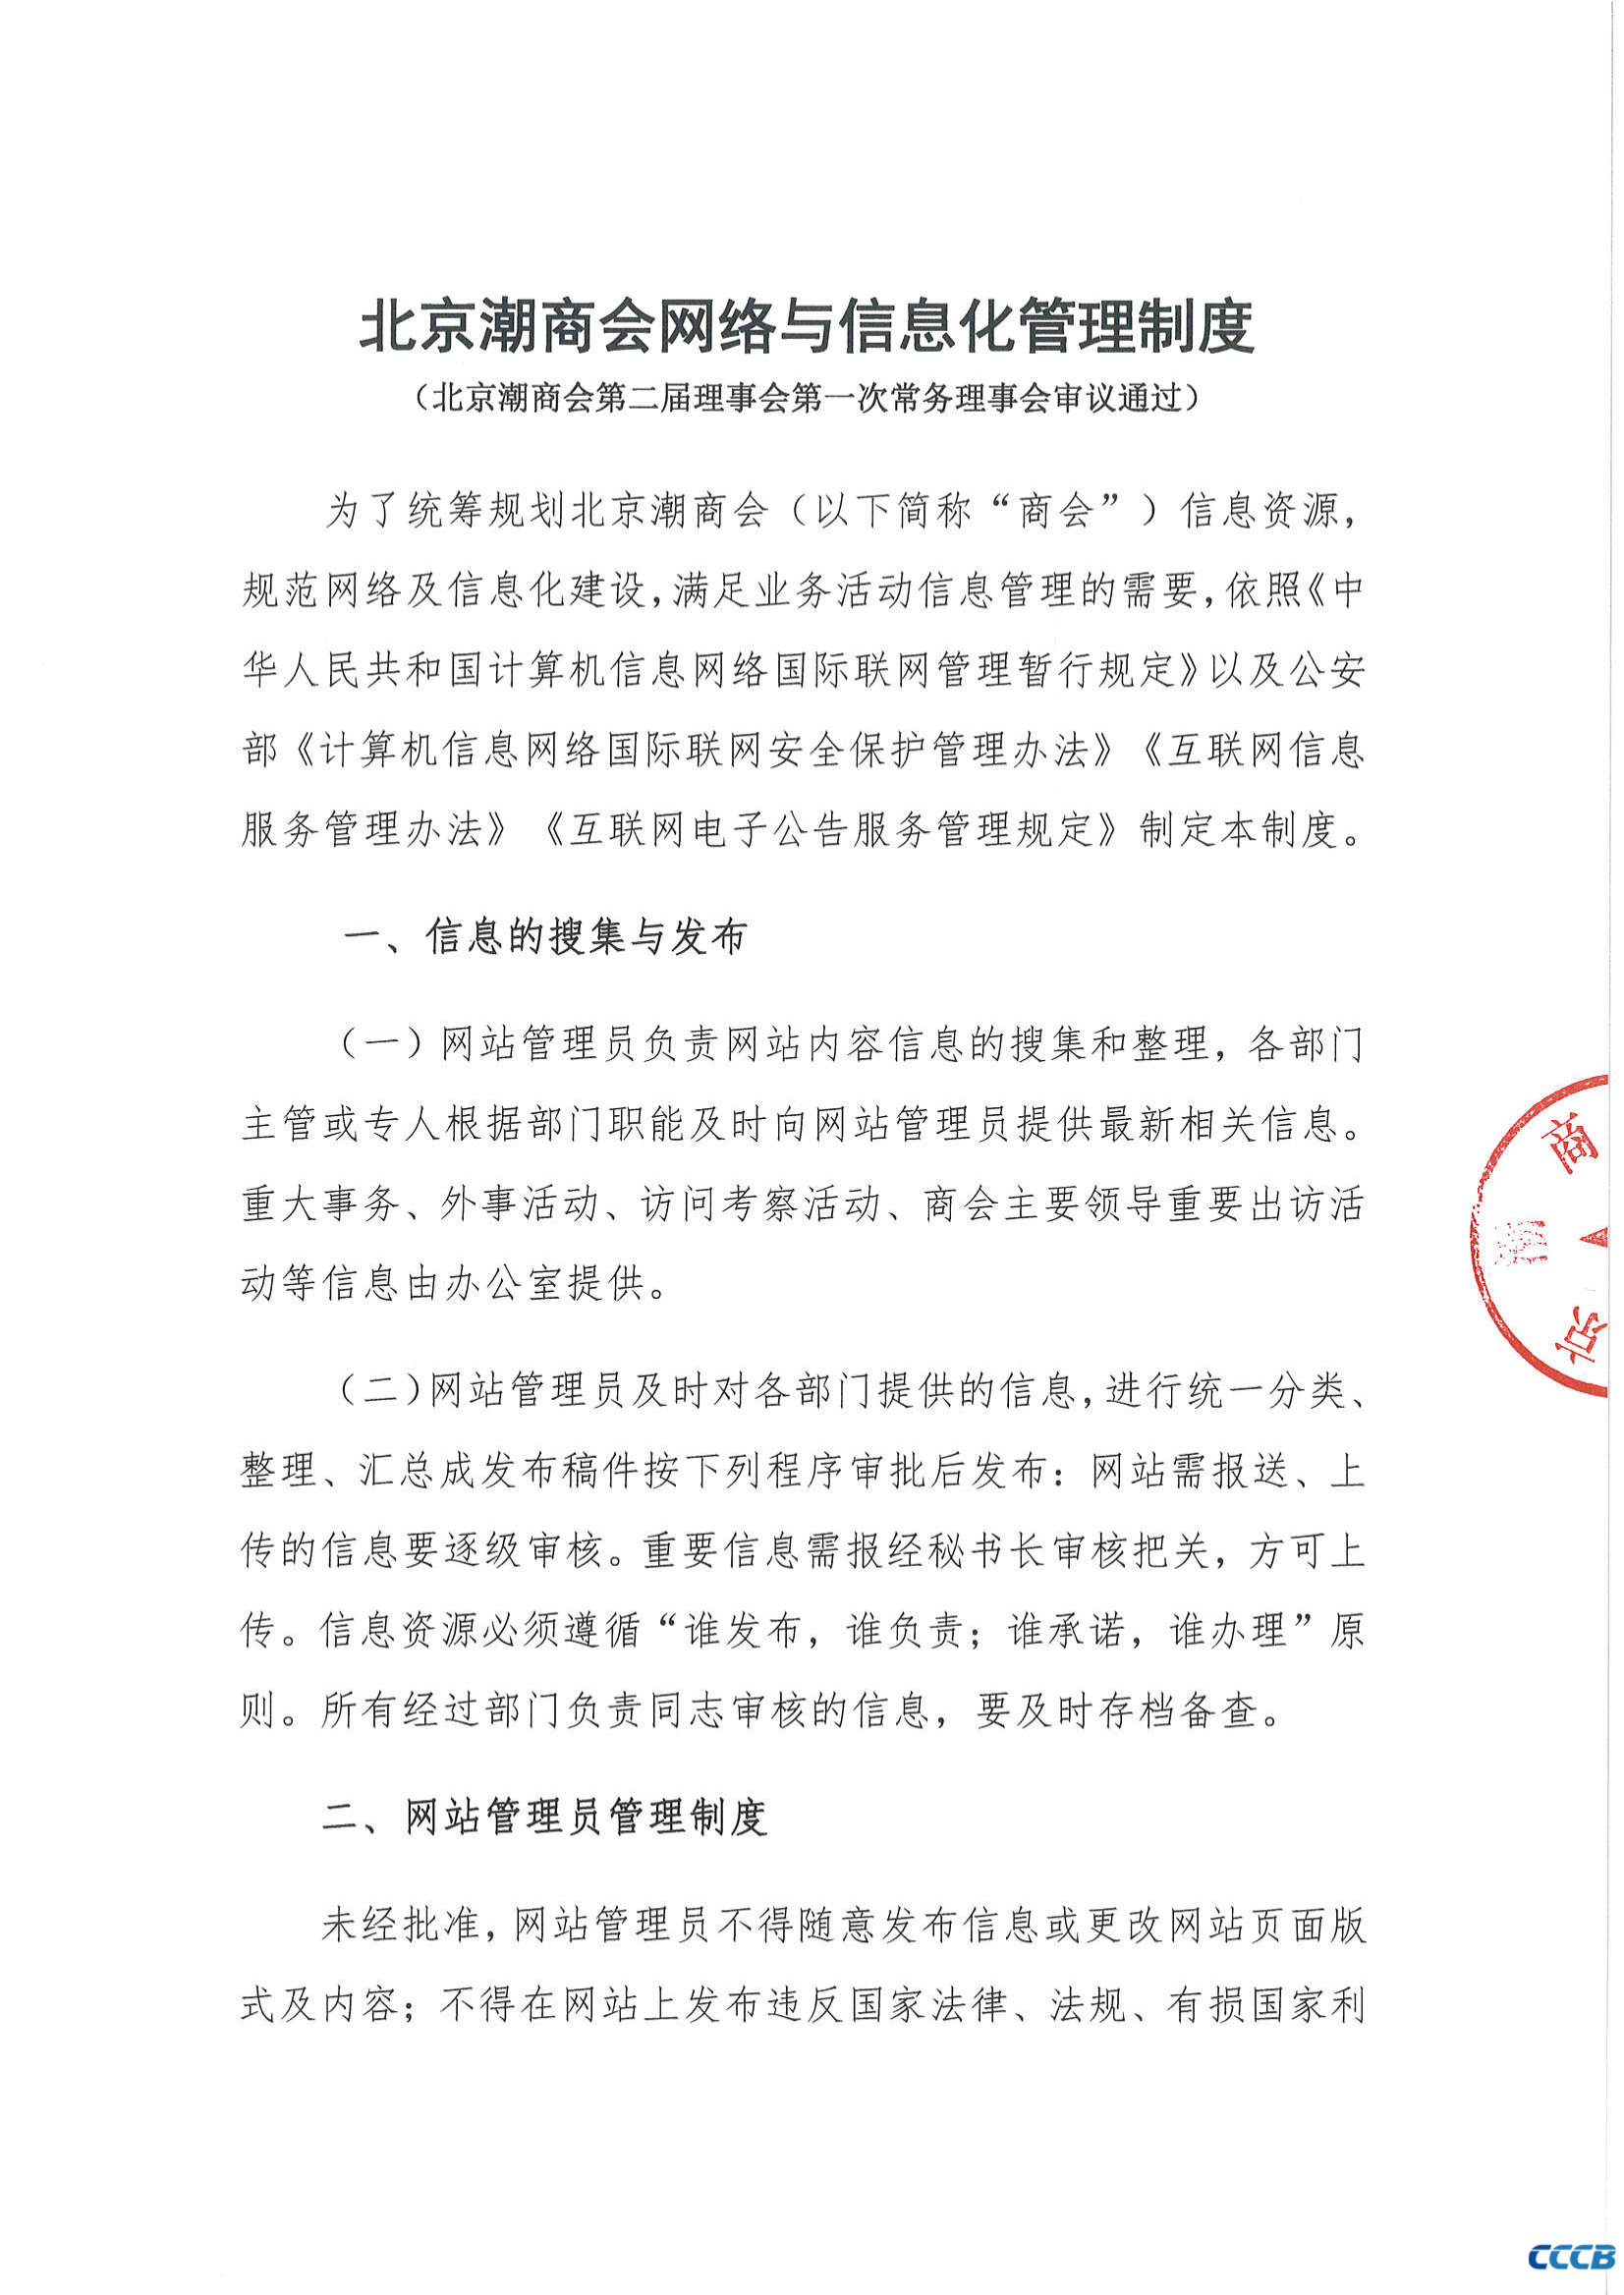 北京潮商会网络与信息化管理制度